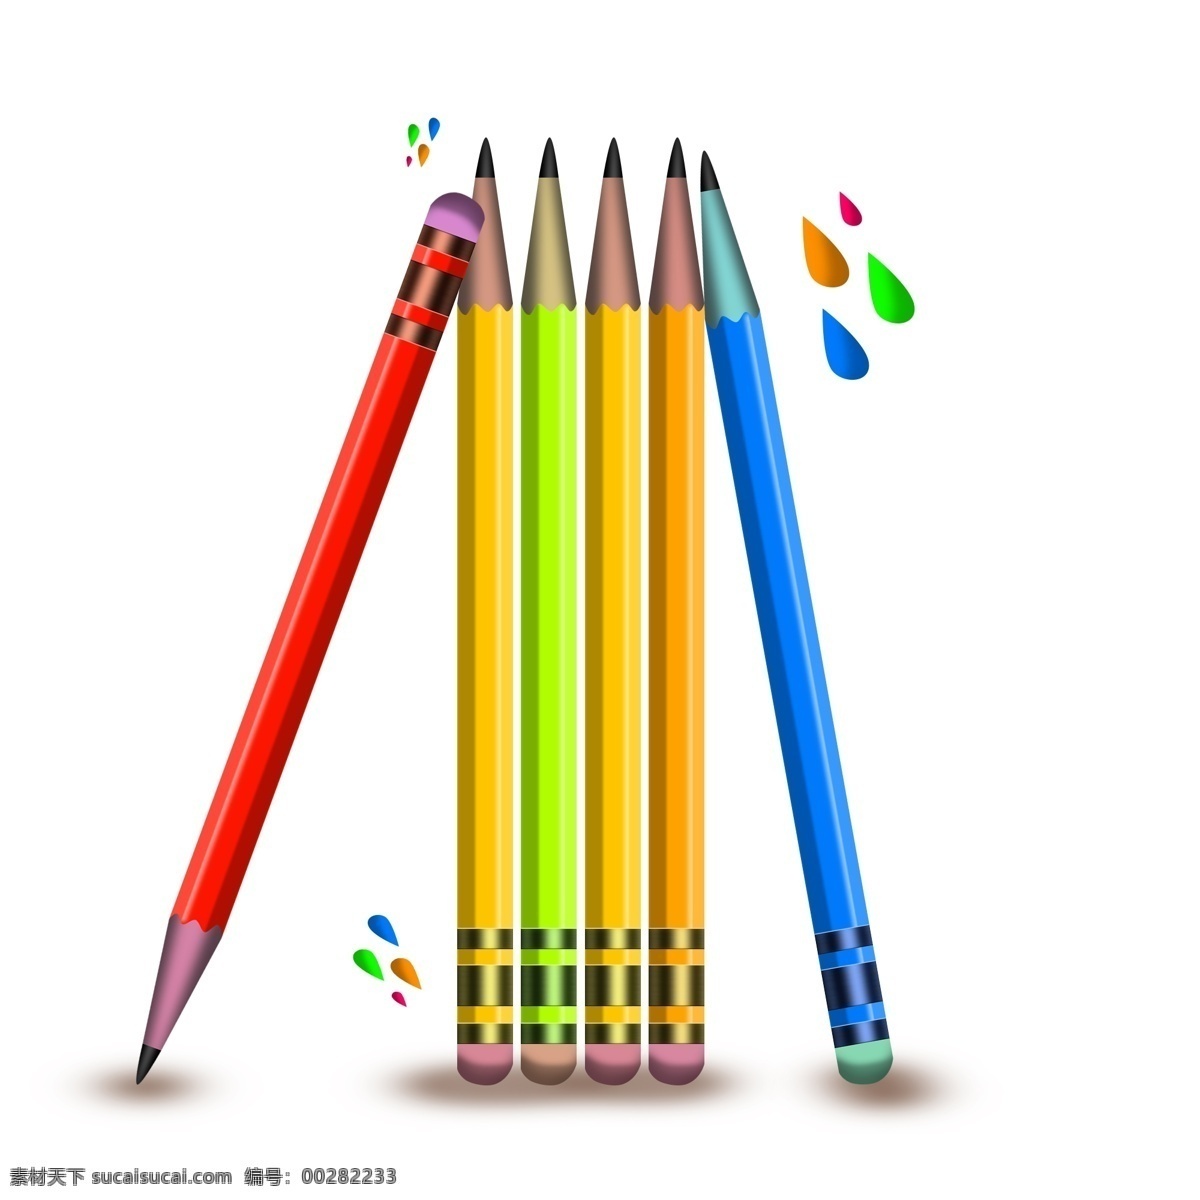 学习 元素 彩色 铅笔 学习元素 学习工具 笔